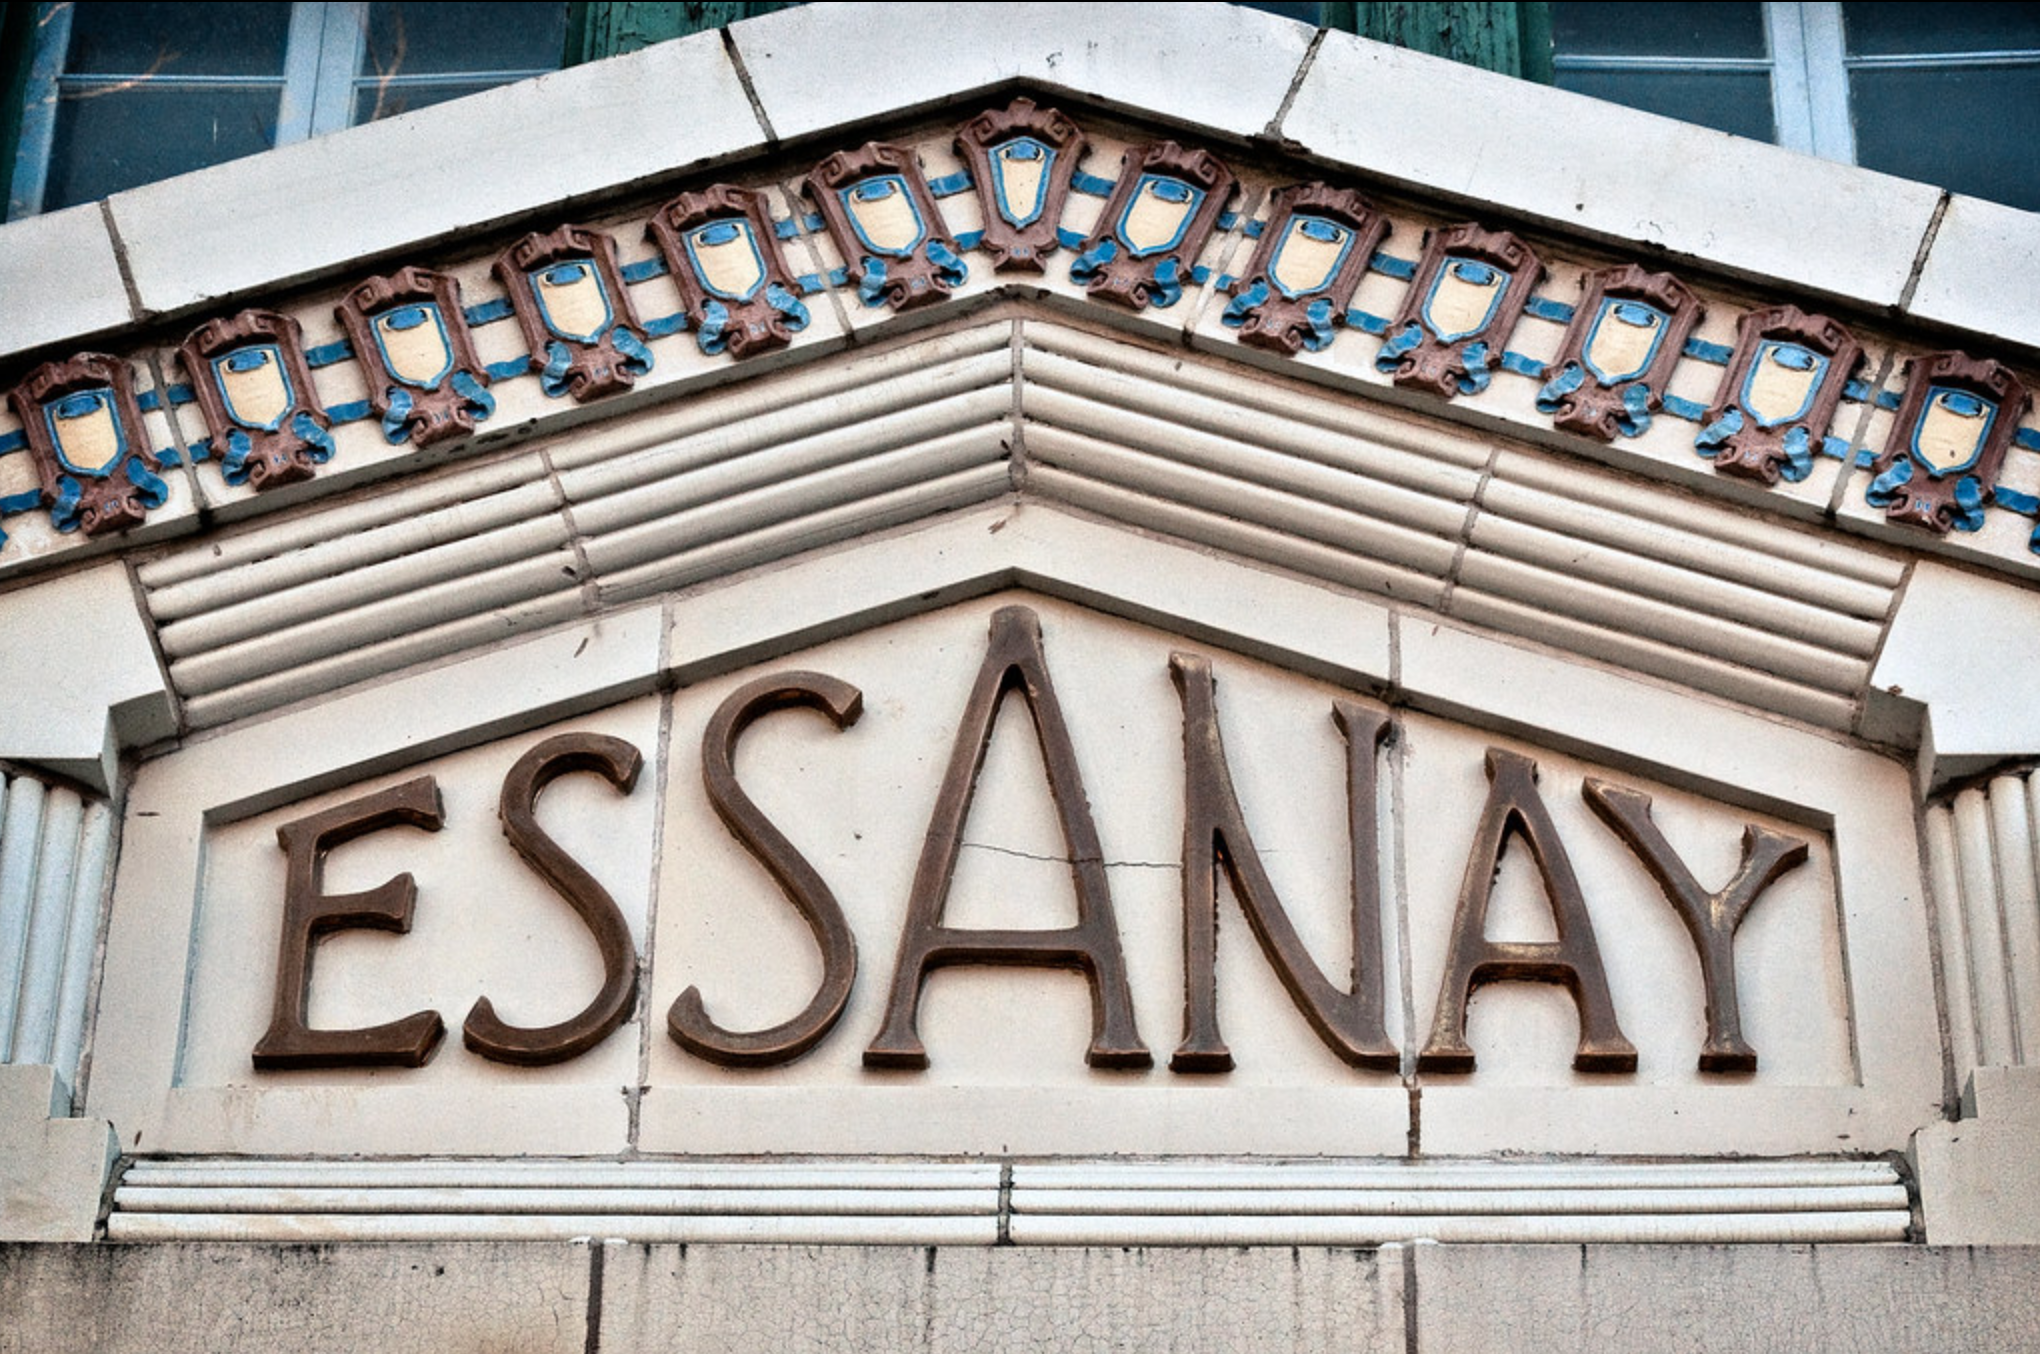 Essanay